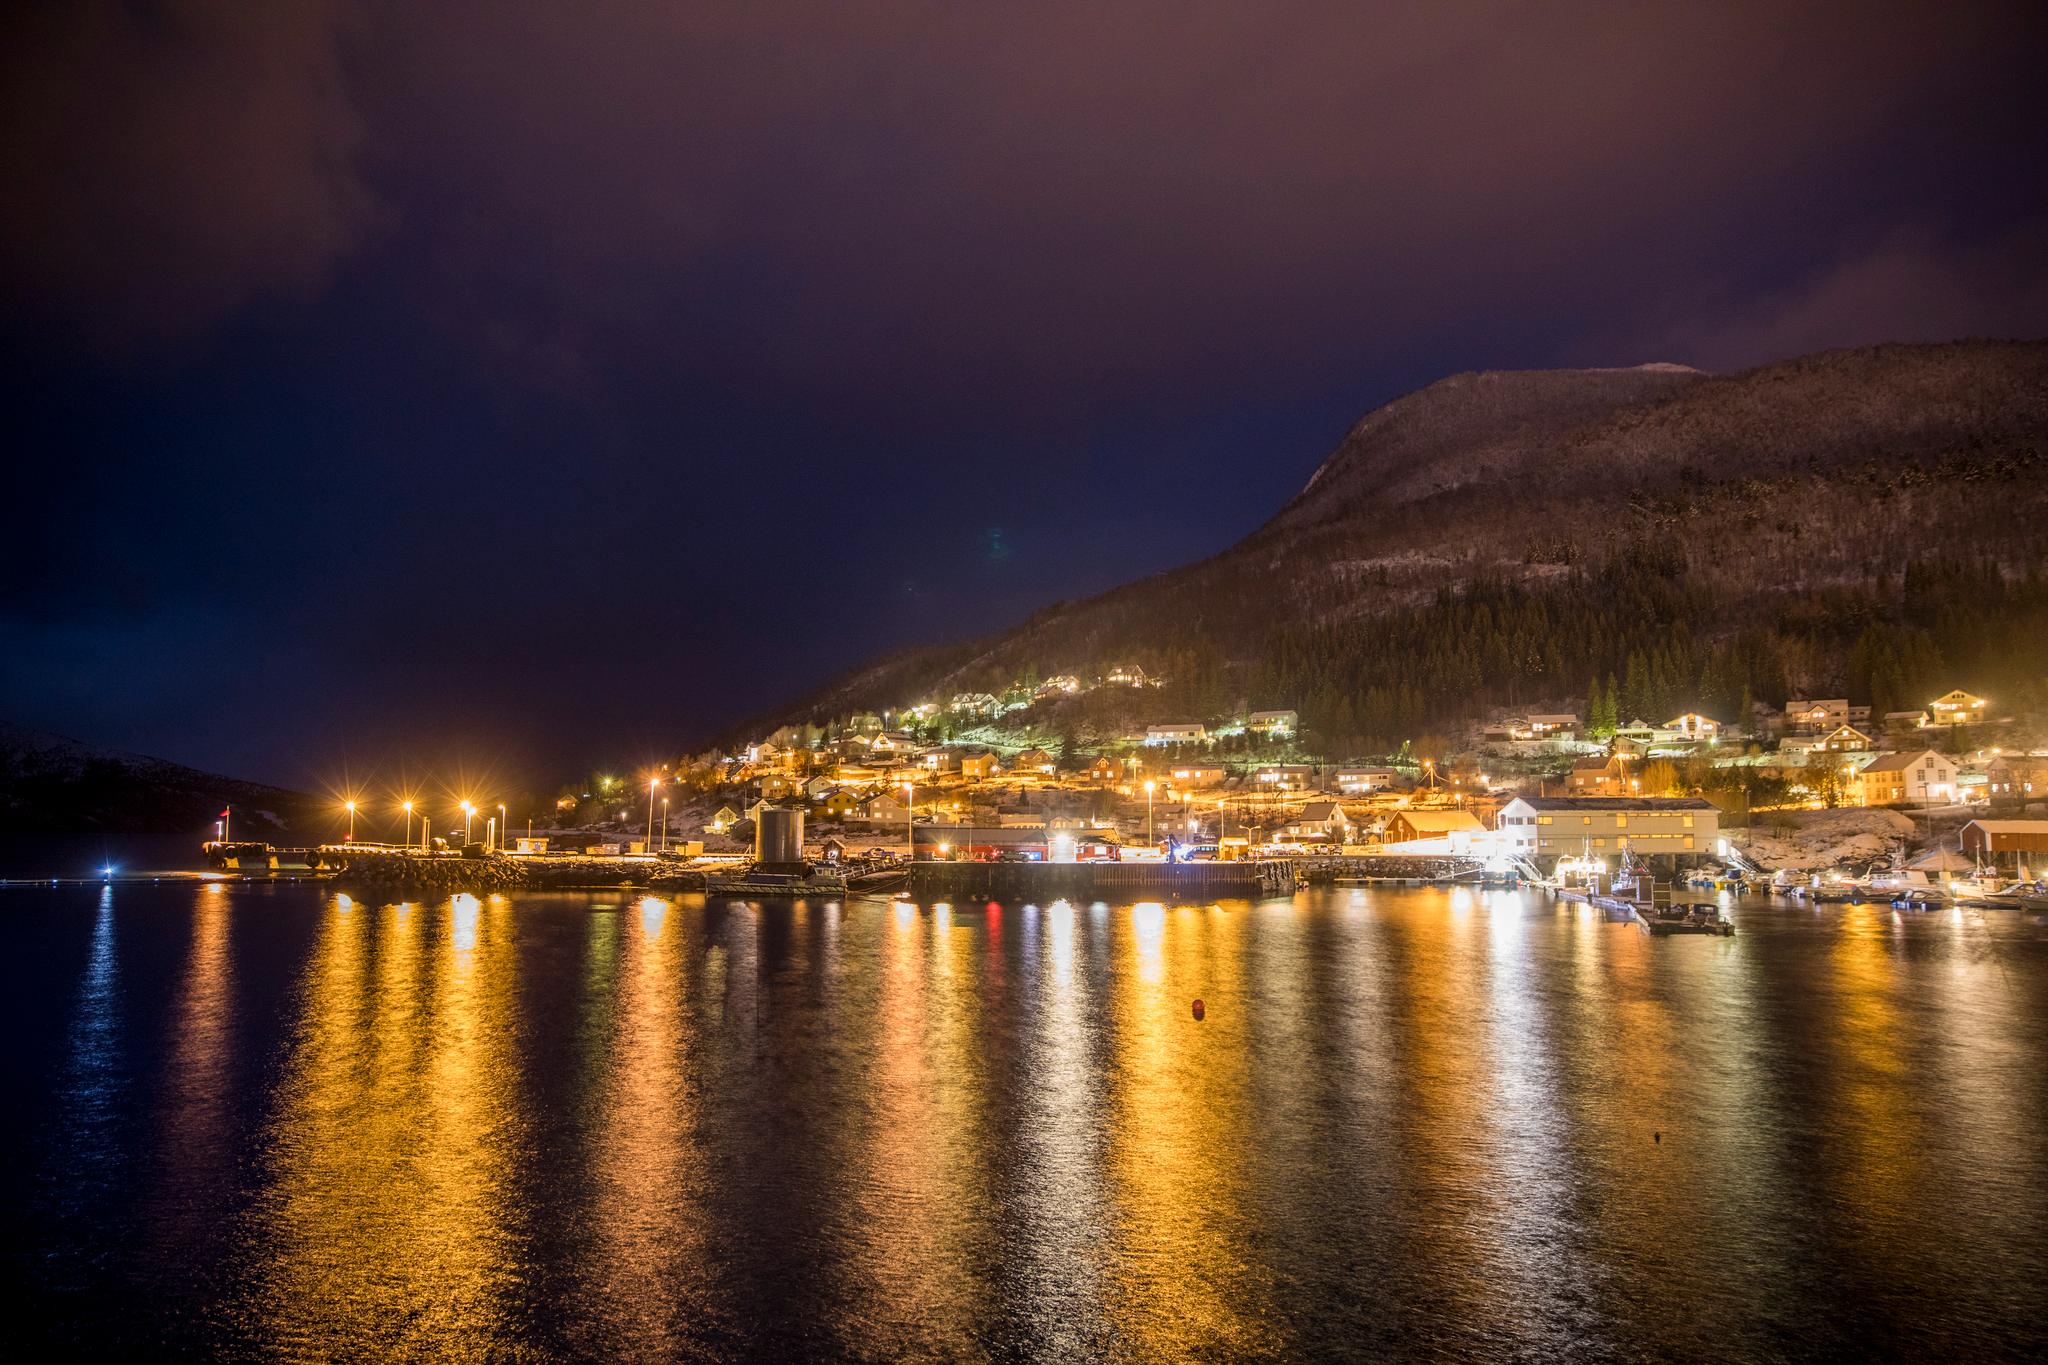 Tettstedet Kjøpsvik i Tysfjord kommune er stedet hvor mange av overgrepene mot barn og mindreårige skal ha skjedd. Foto: Tore Meek / NTB scanpix